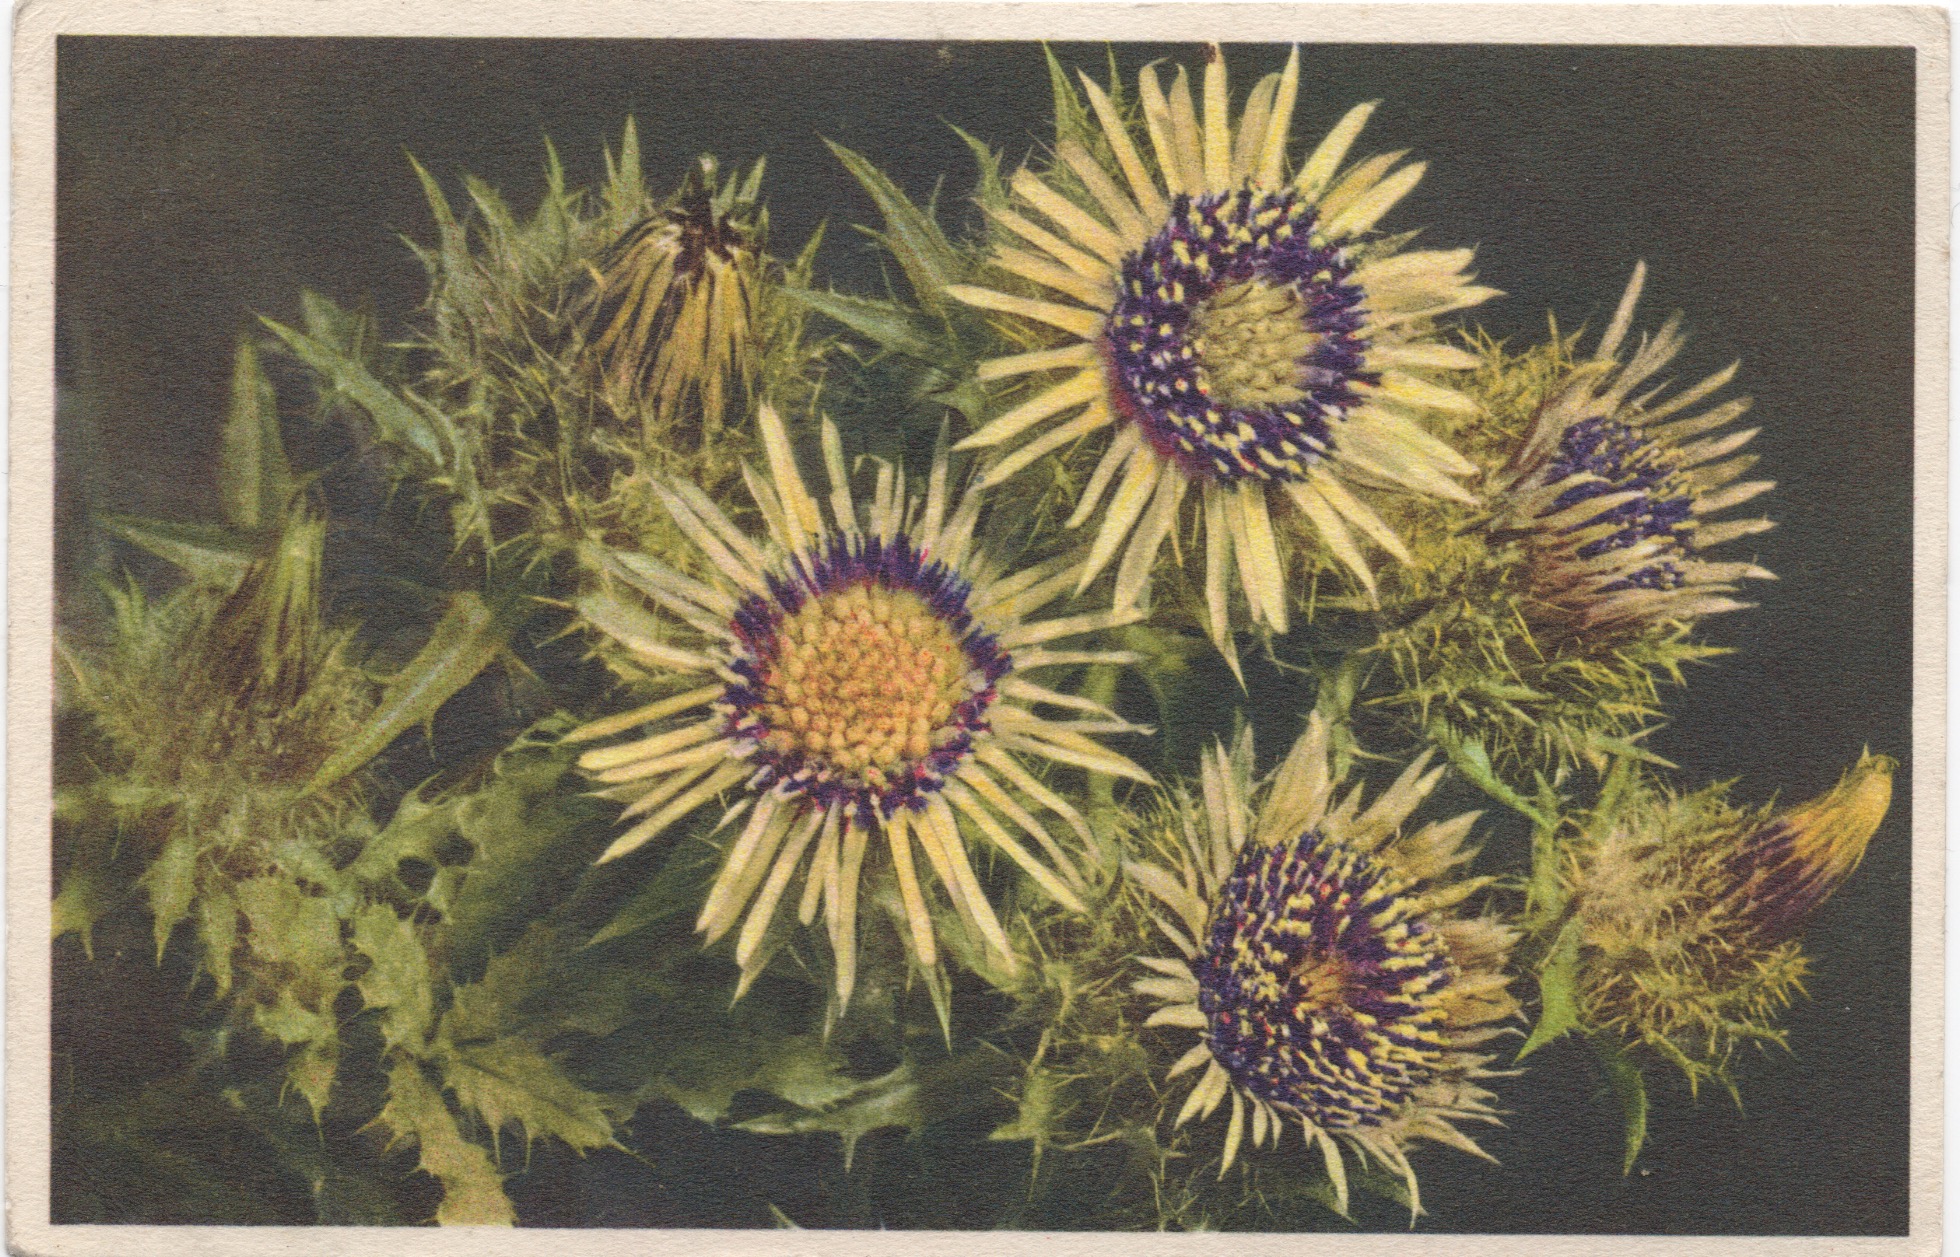 thistles on vintage postcard